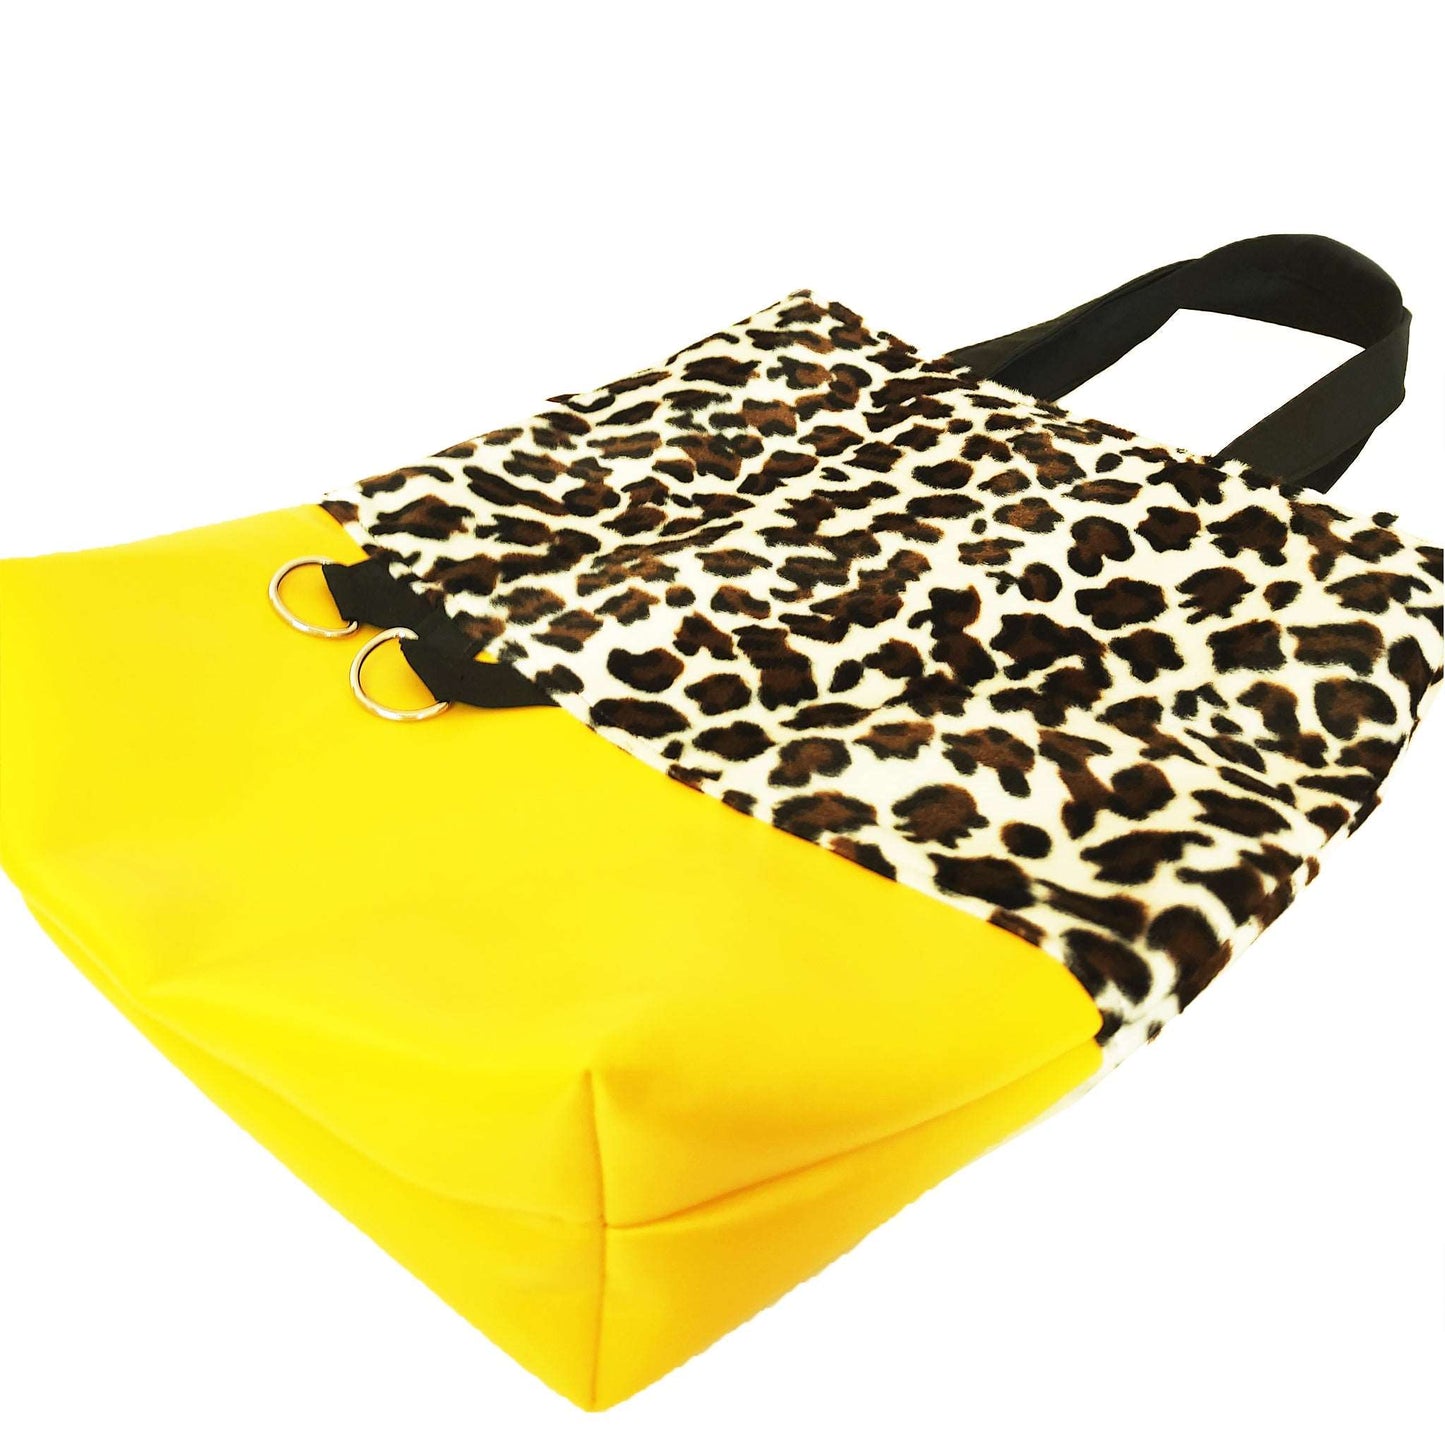 Schnee-Wildkatze Fellimitat kombiniert mit einem Lederimitat in leuchtendem Gelb.  Praktische Tasche mit der perfekten Größe, um deine wichtigsten Alltags-Sachen immer dabei zu haben.